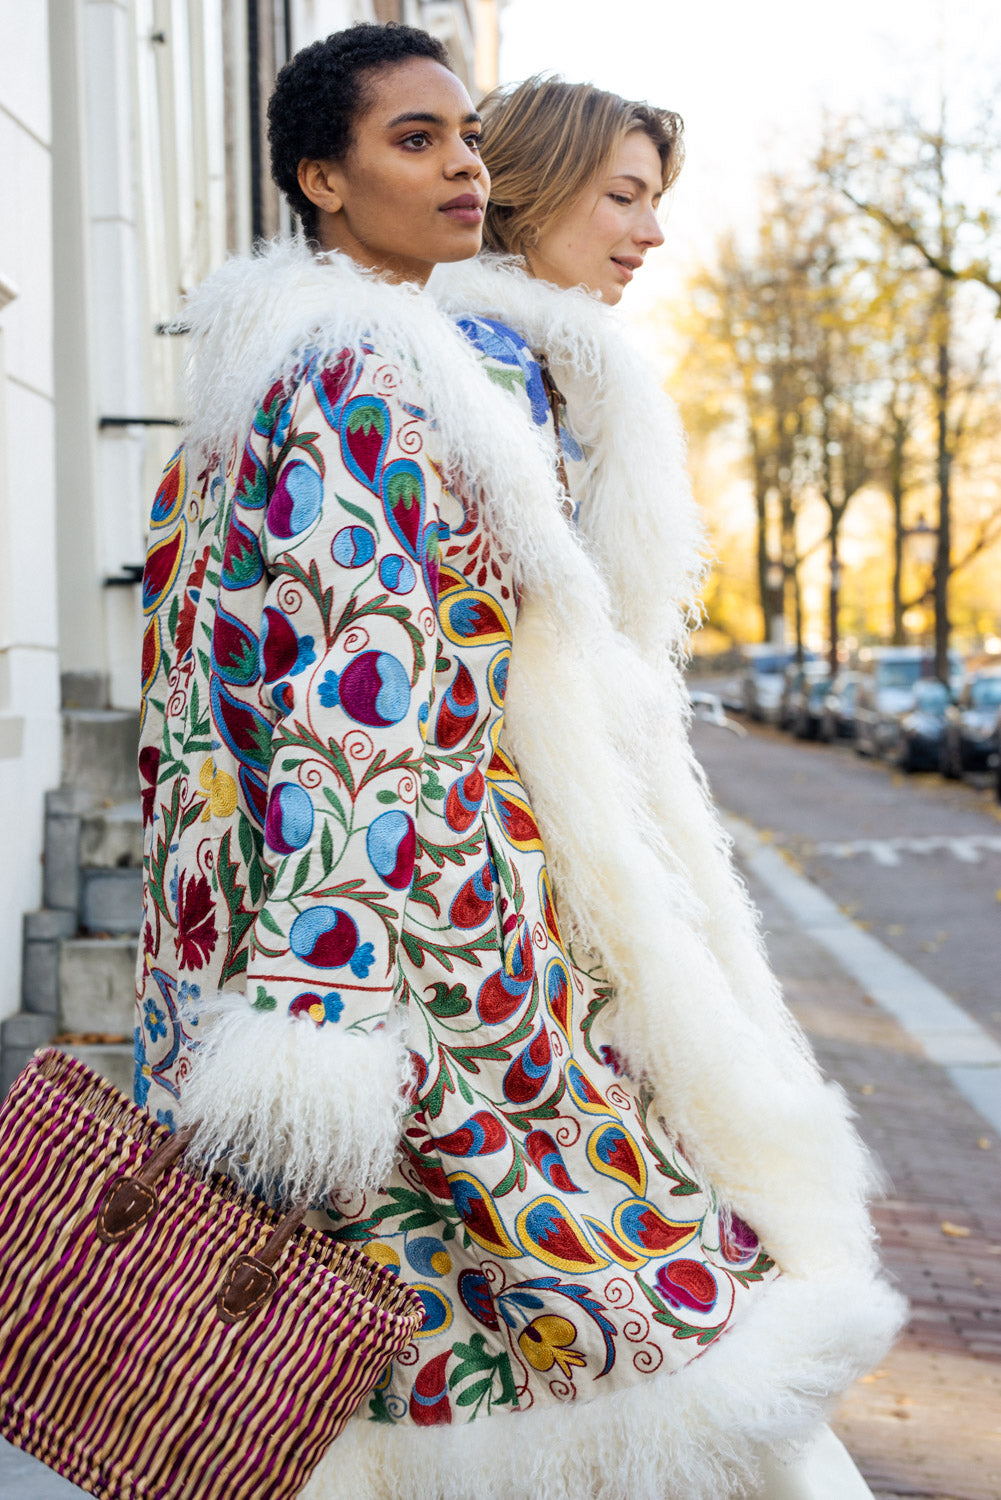 Suzani Coat - white & multicolor